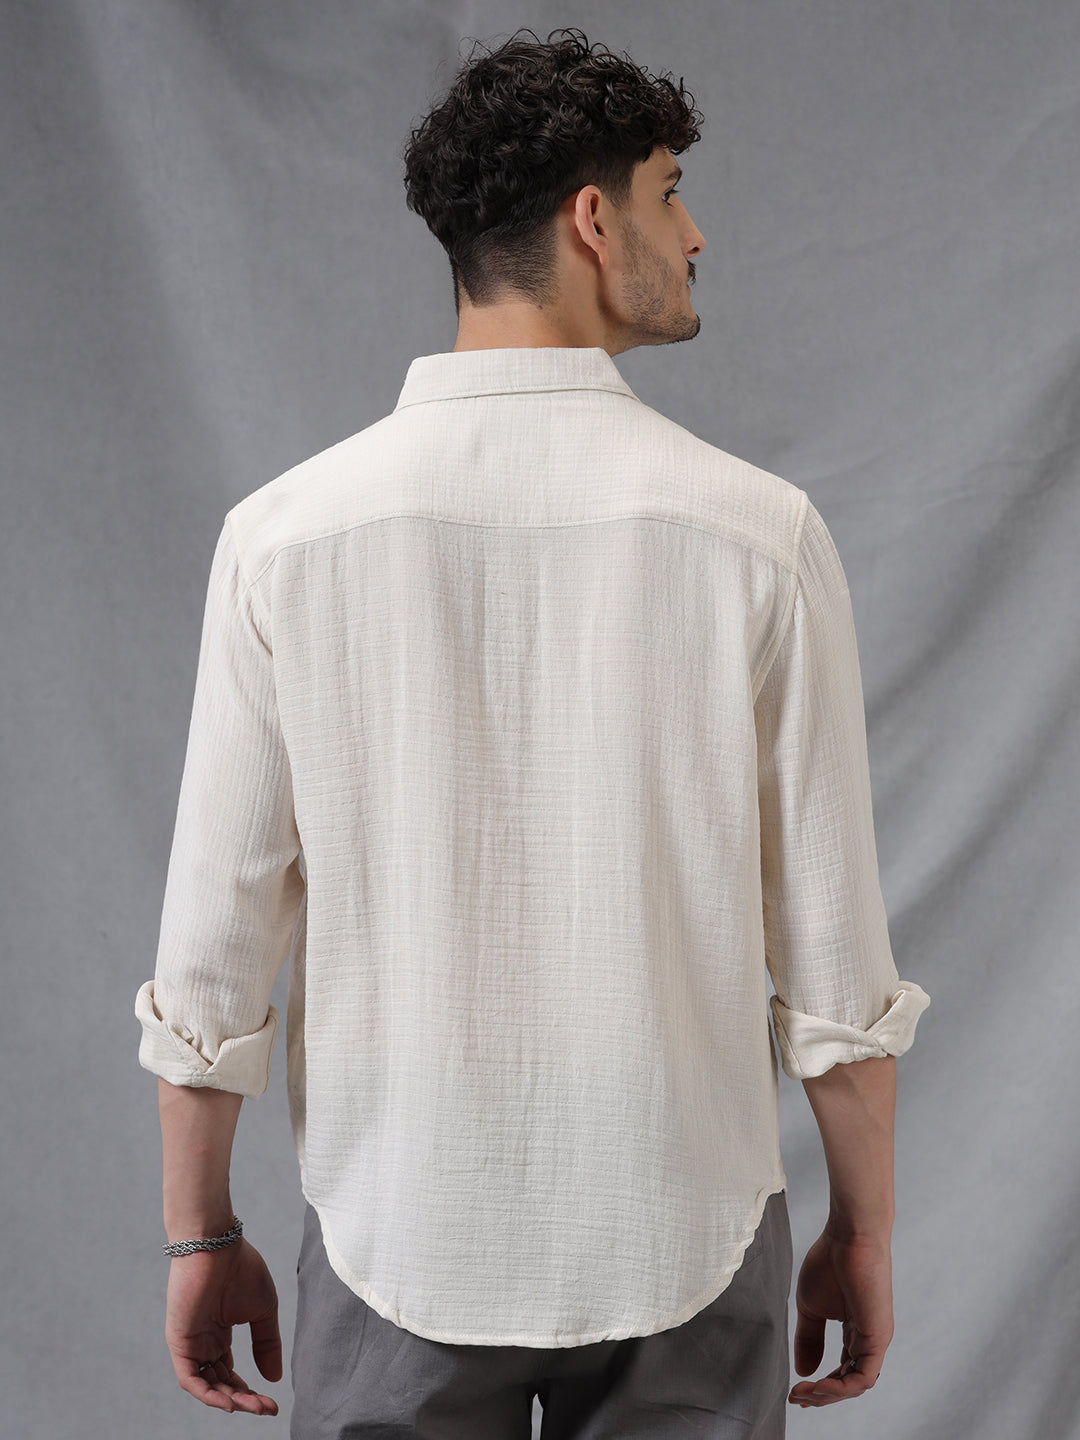 Off White Weave Pattern Full Sleeve Shirt